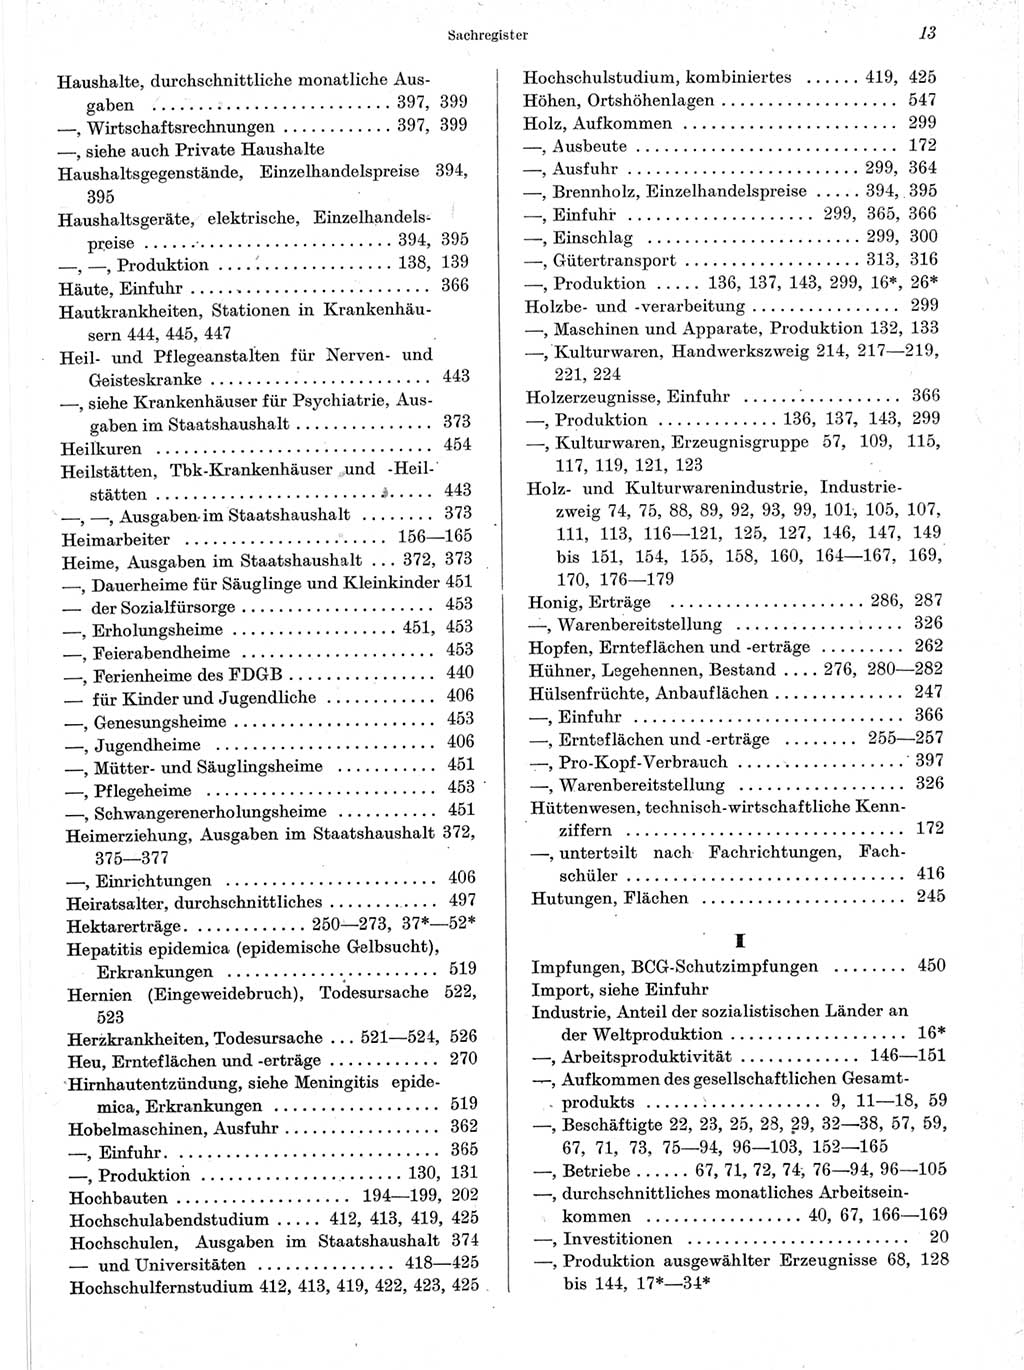 Statistisches Jahrbuch der Deutschen Demokratischen Republik (DDR) 1963, Seite 13 (Stat. Jb. DDR 1963, S. 13)